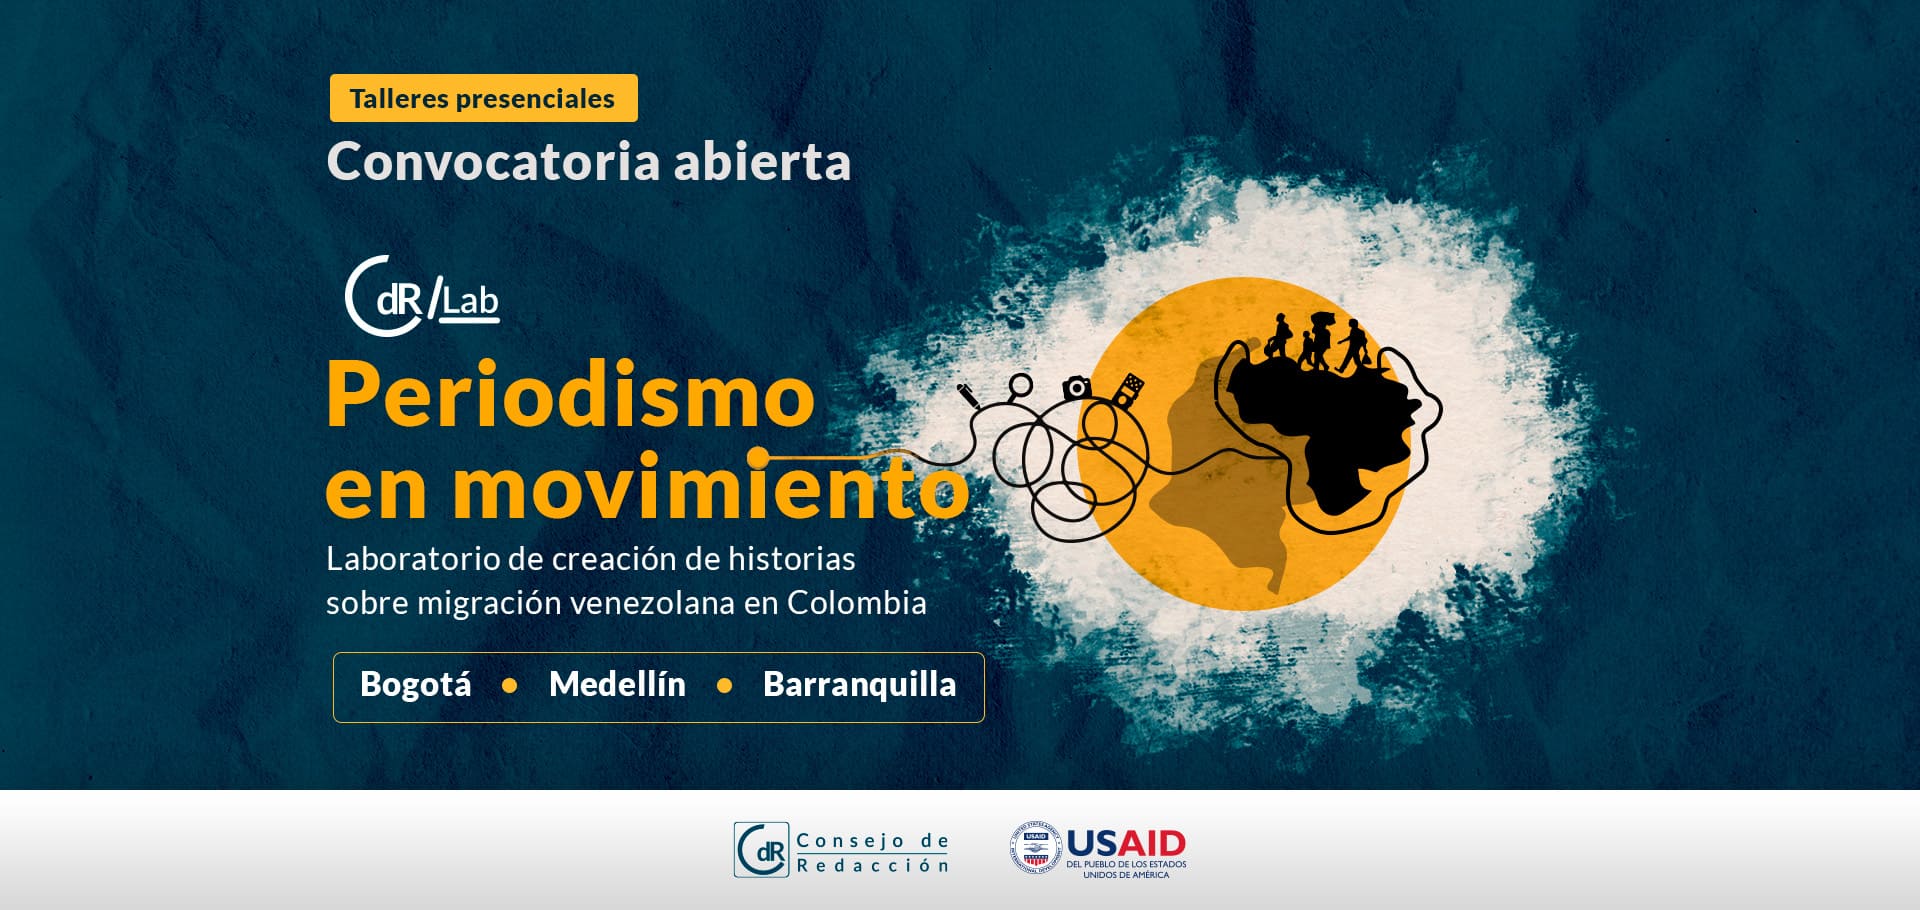 CdR/Lab Periodismo en movimiento Laboratorio de creación de historias sobre migración venezolana en Colombia